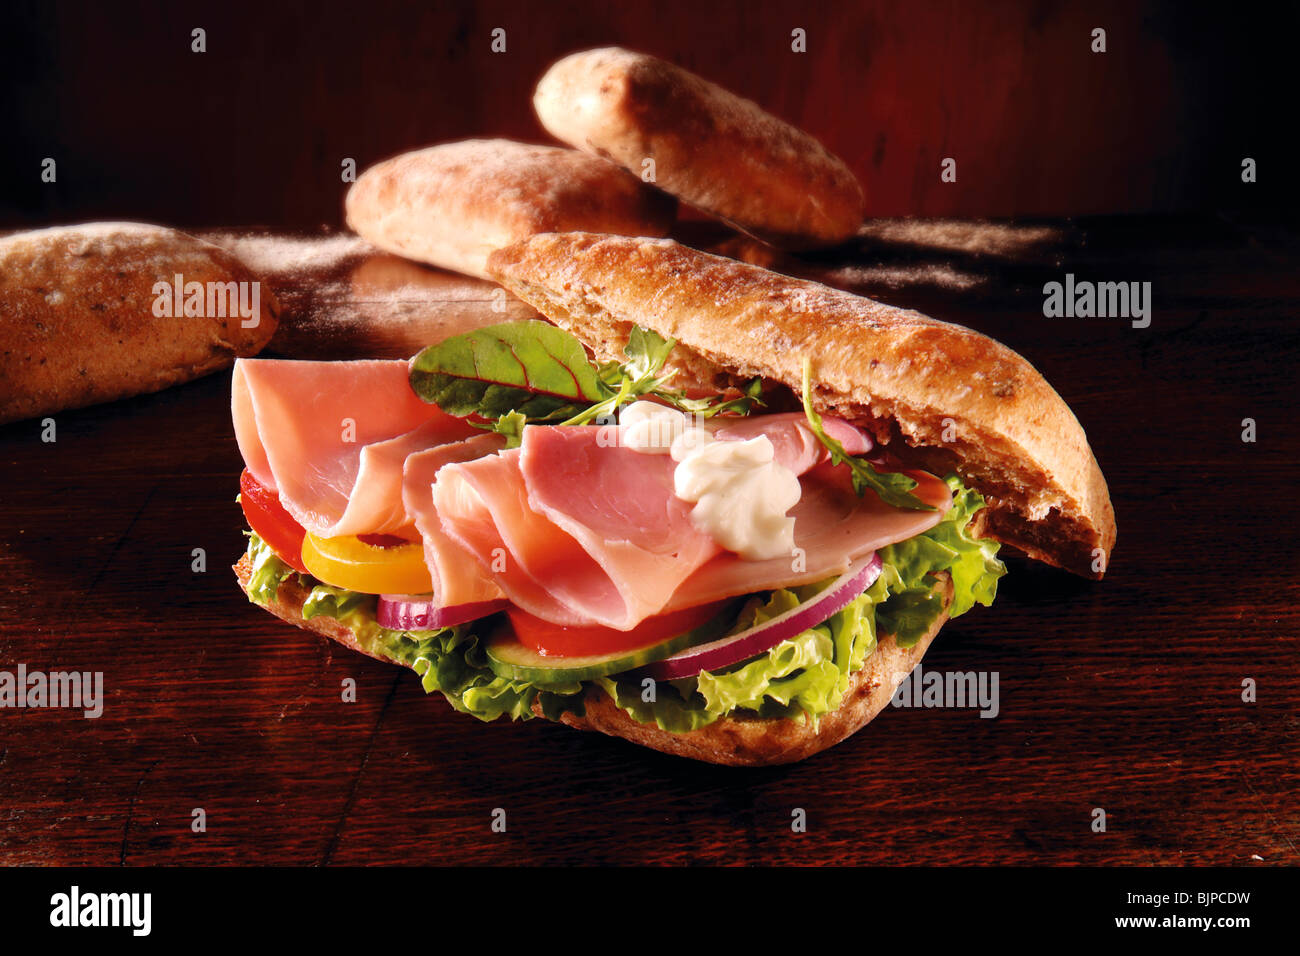 Salade de jambon et chiabatta sandwich. Photos de nourriture. Banque D'Images